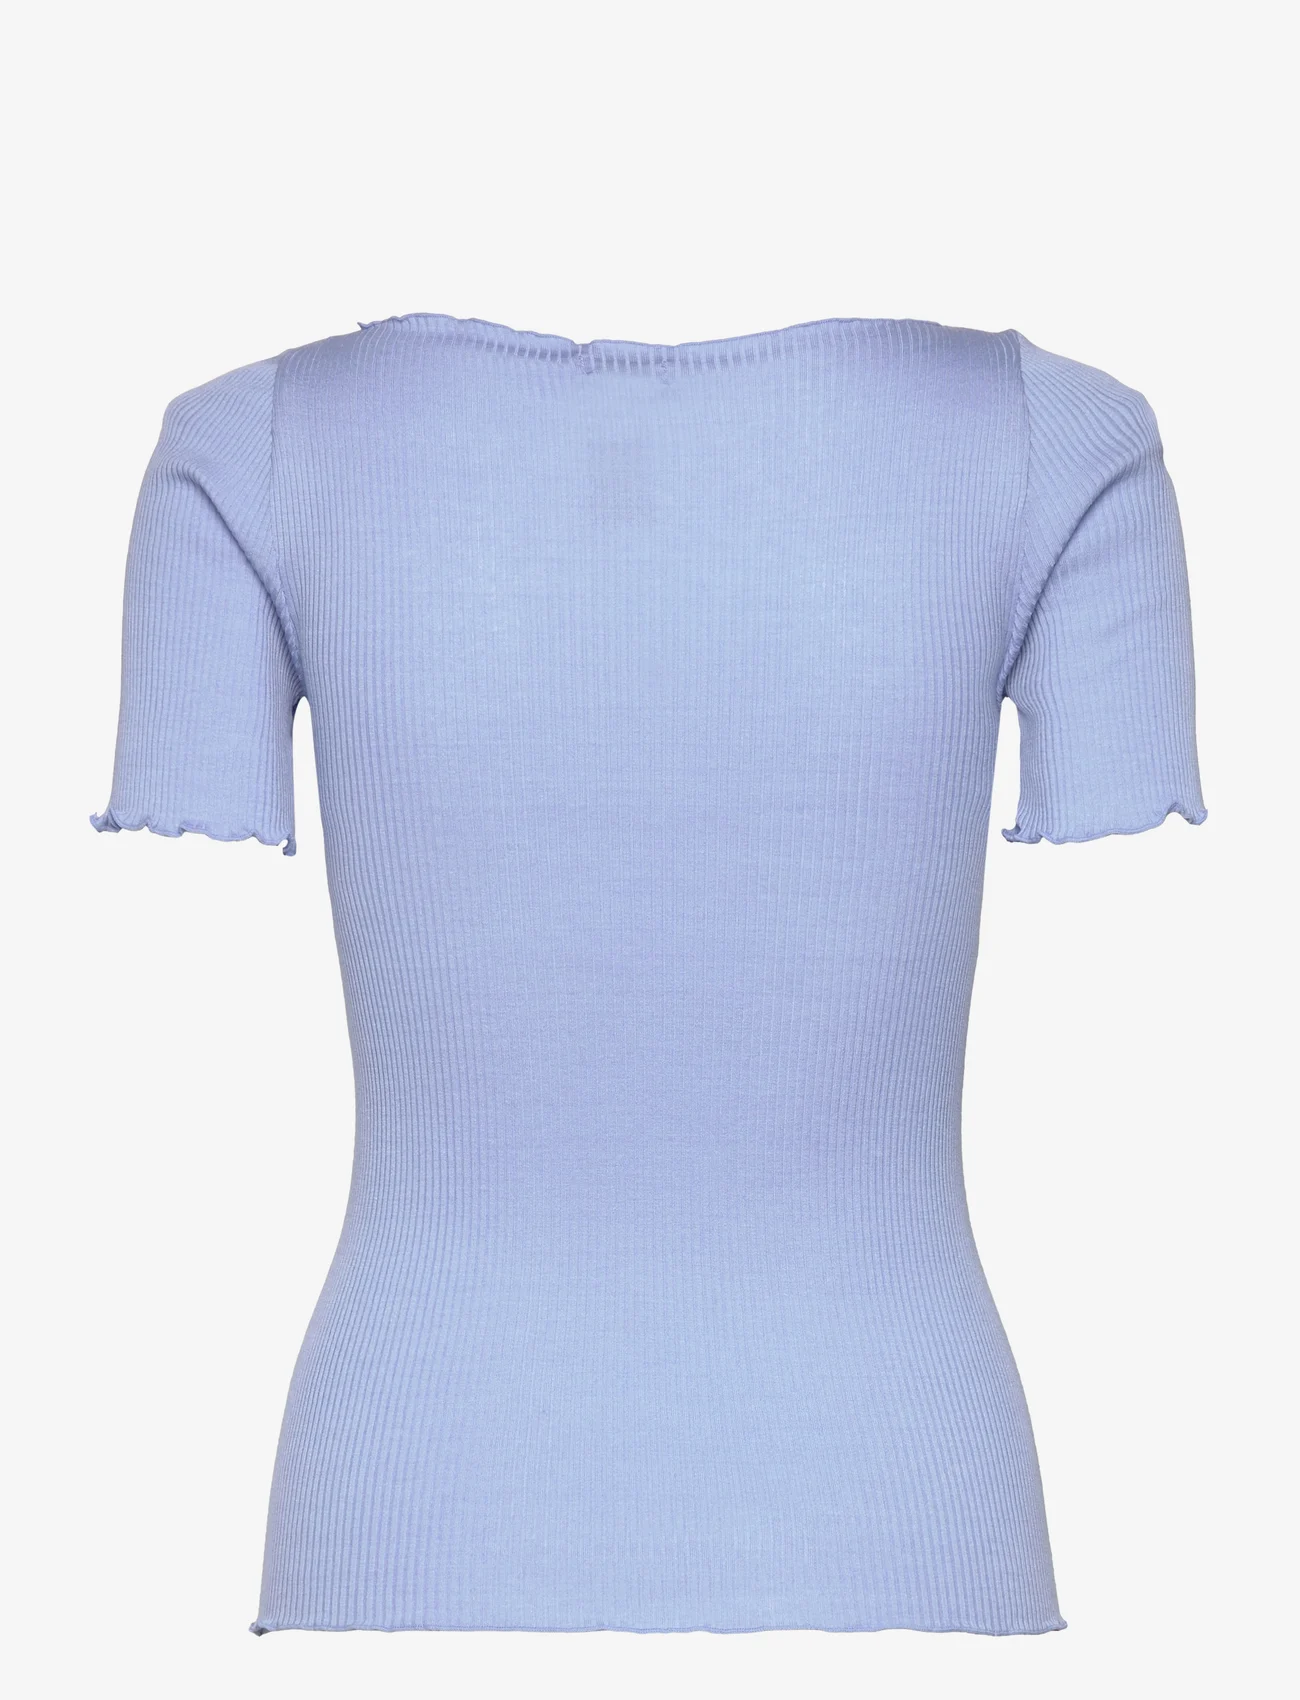 Rosemunde - Silk boat neck t-shirt - t-skjorter - blue heaven - 1